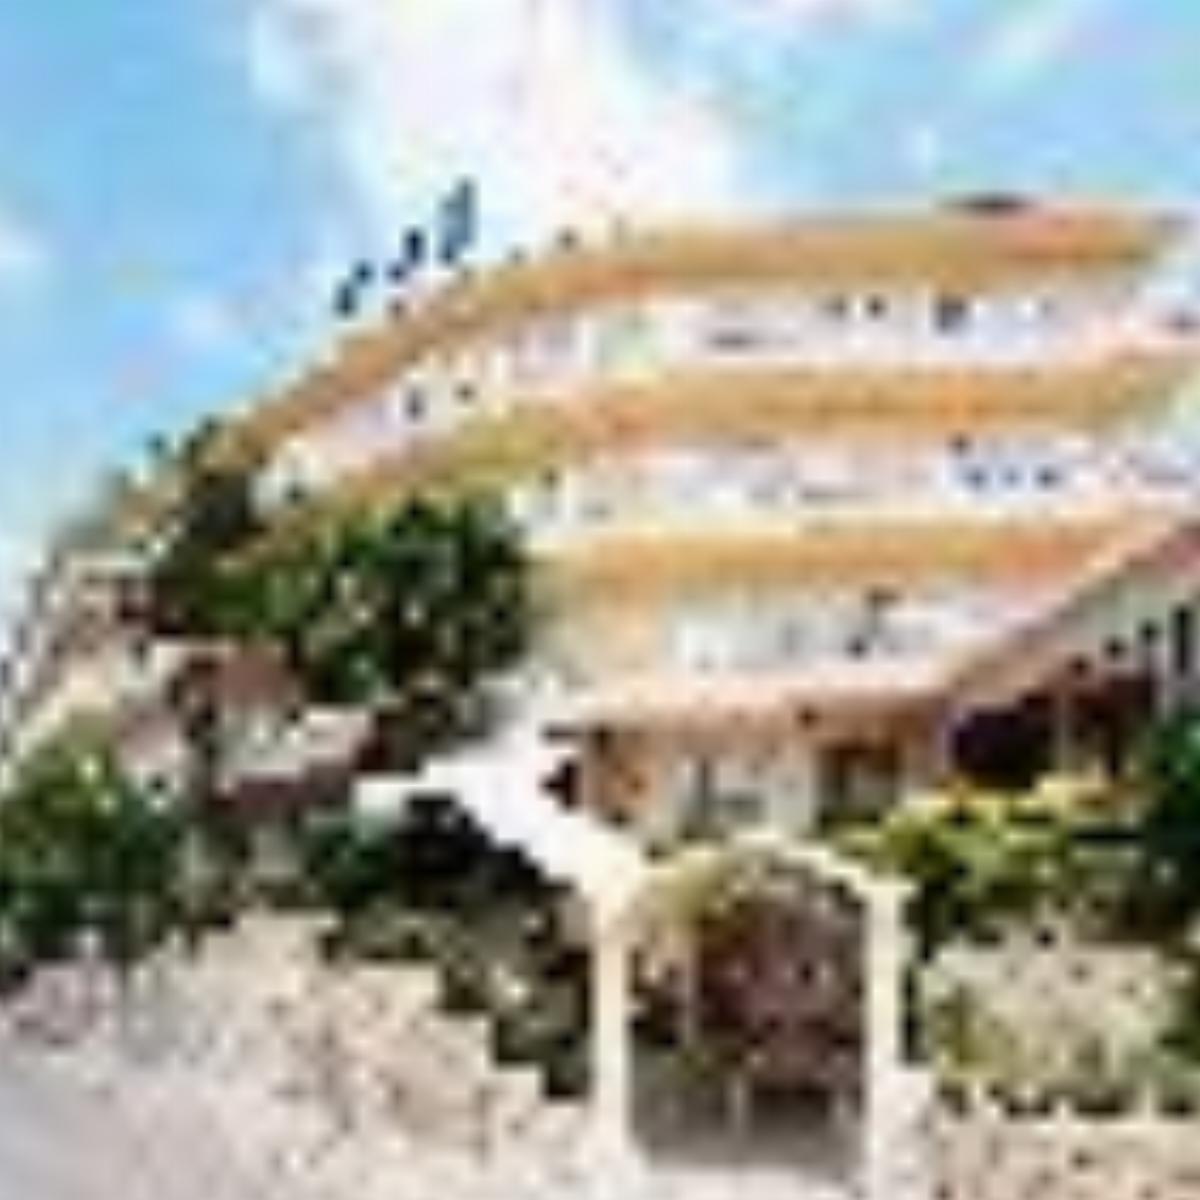 Grupotel Nilo & Spa Hotel Majorca Spain